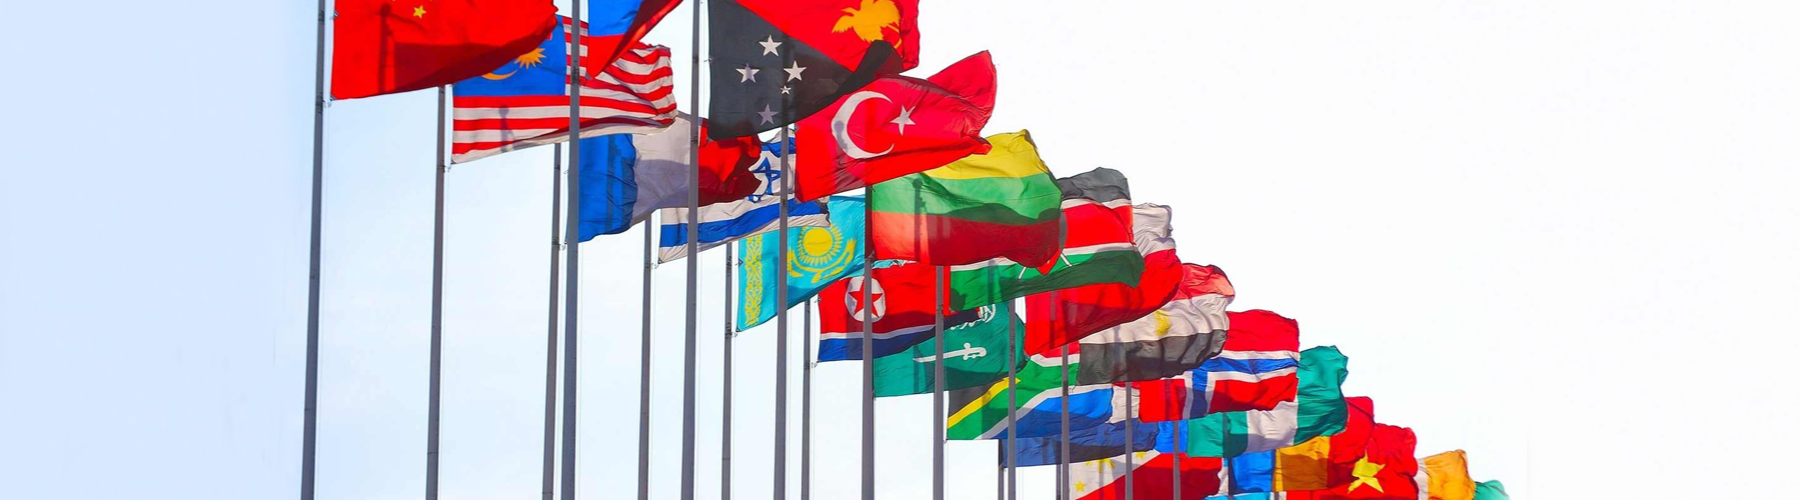 Quels pays ont les drapeaux les plus fous ?